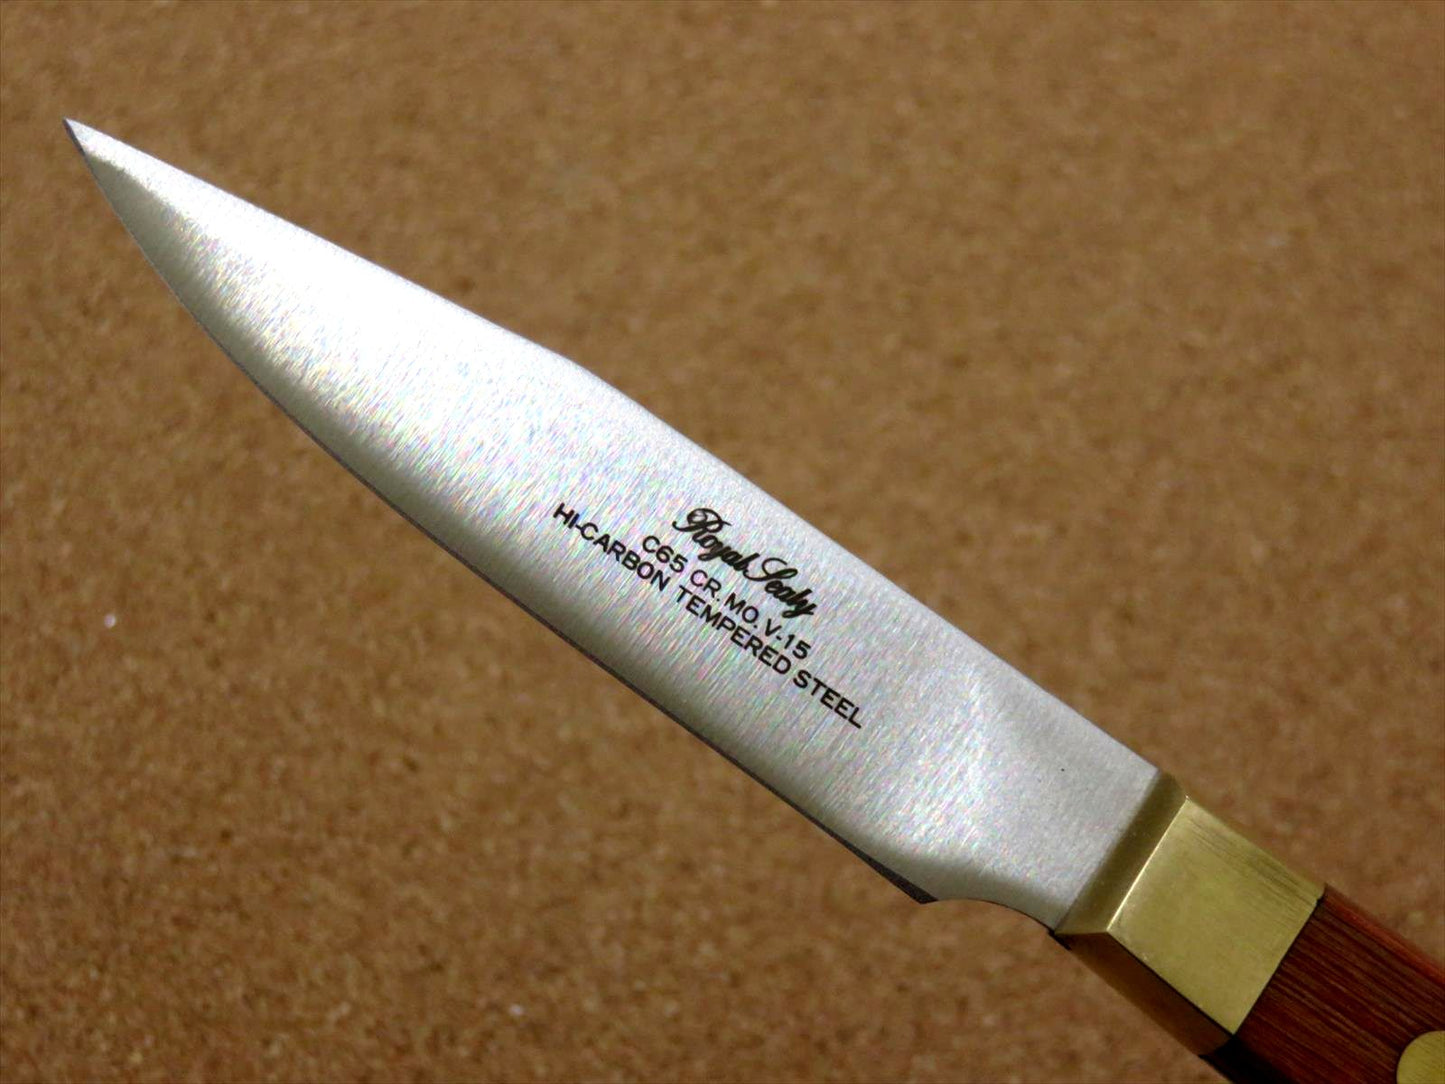 https://jp-knives.com/cdn/shop/products/th-rw-paring_3__14065.jpg?v=1692605881&width=1445